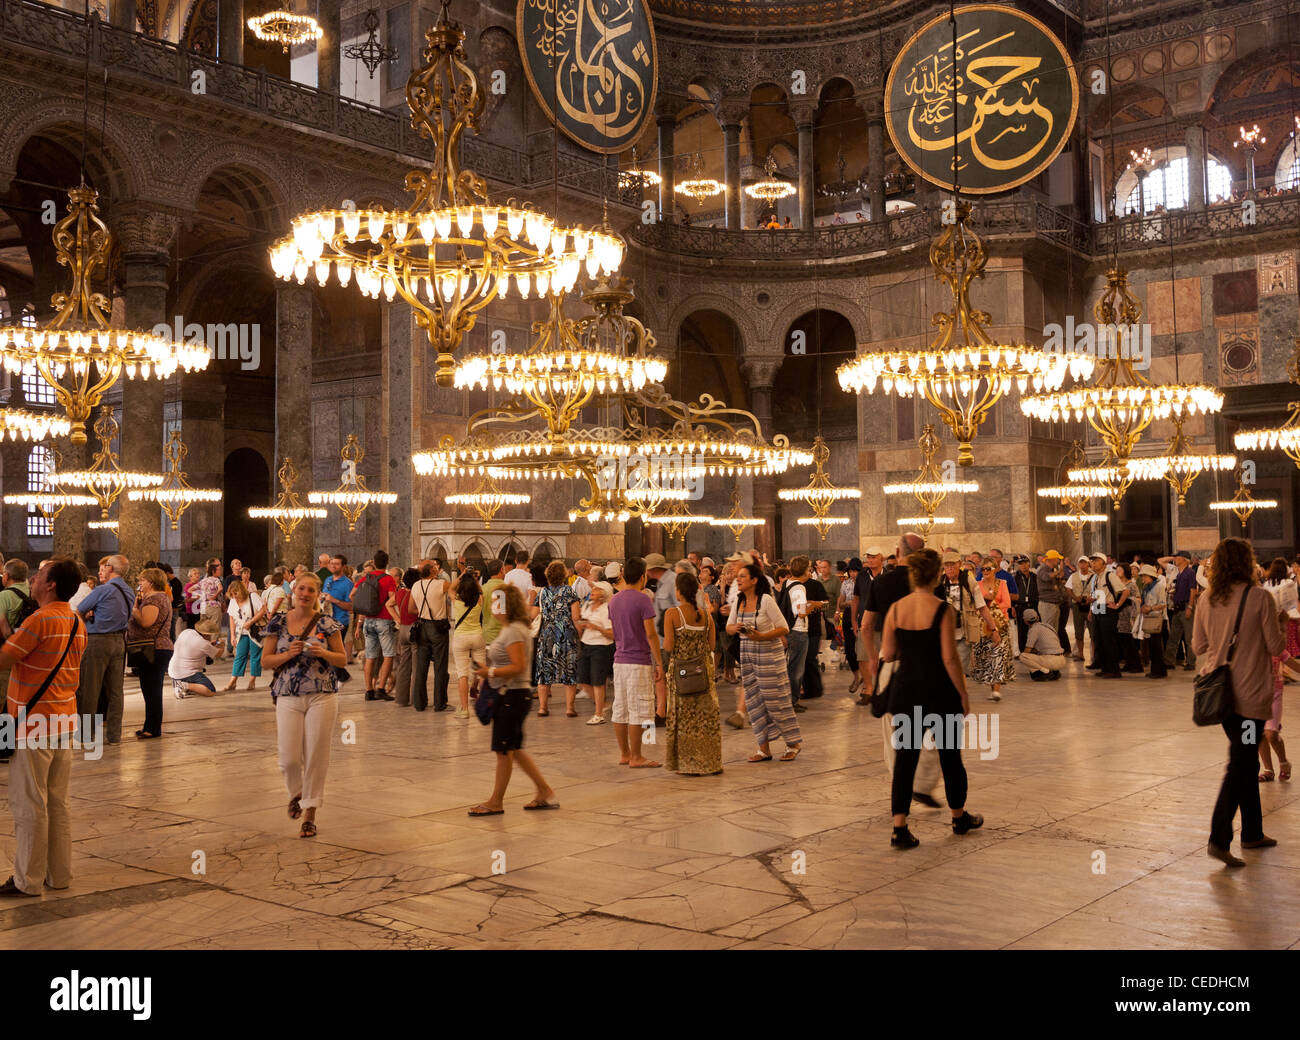 Les touristes dans la nef de la basilique Sainte-Sophie (Aya Sofya) basilique, Sultanahmet, Istanbul, Turquie Banque D'Images